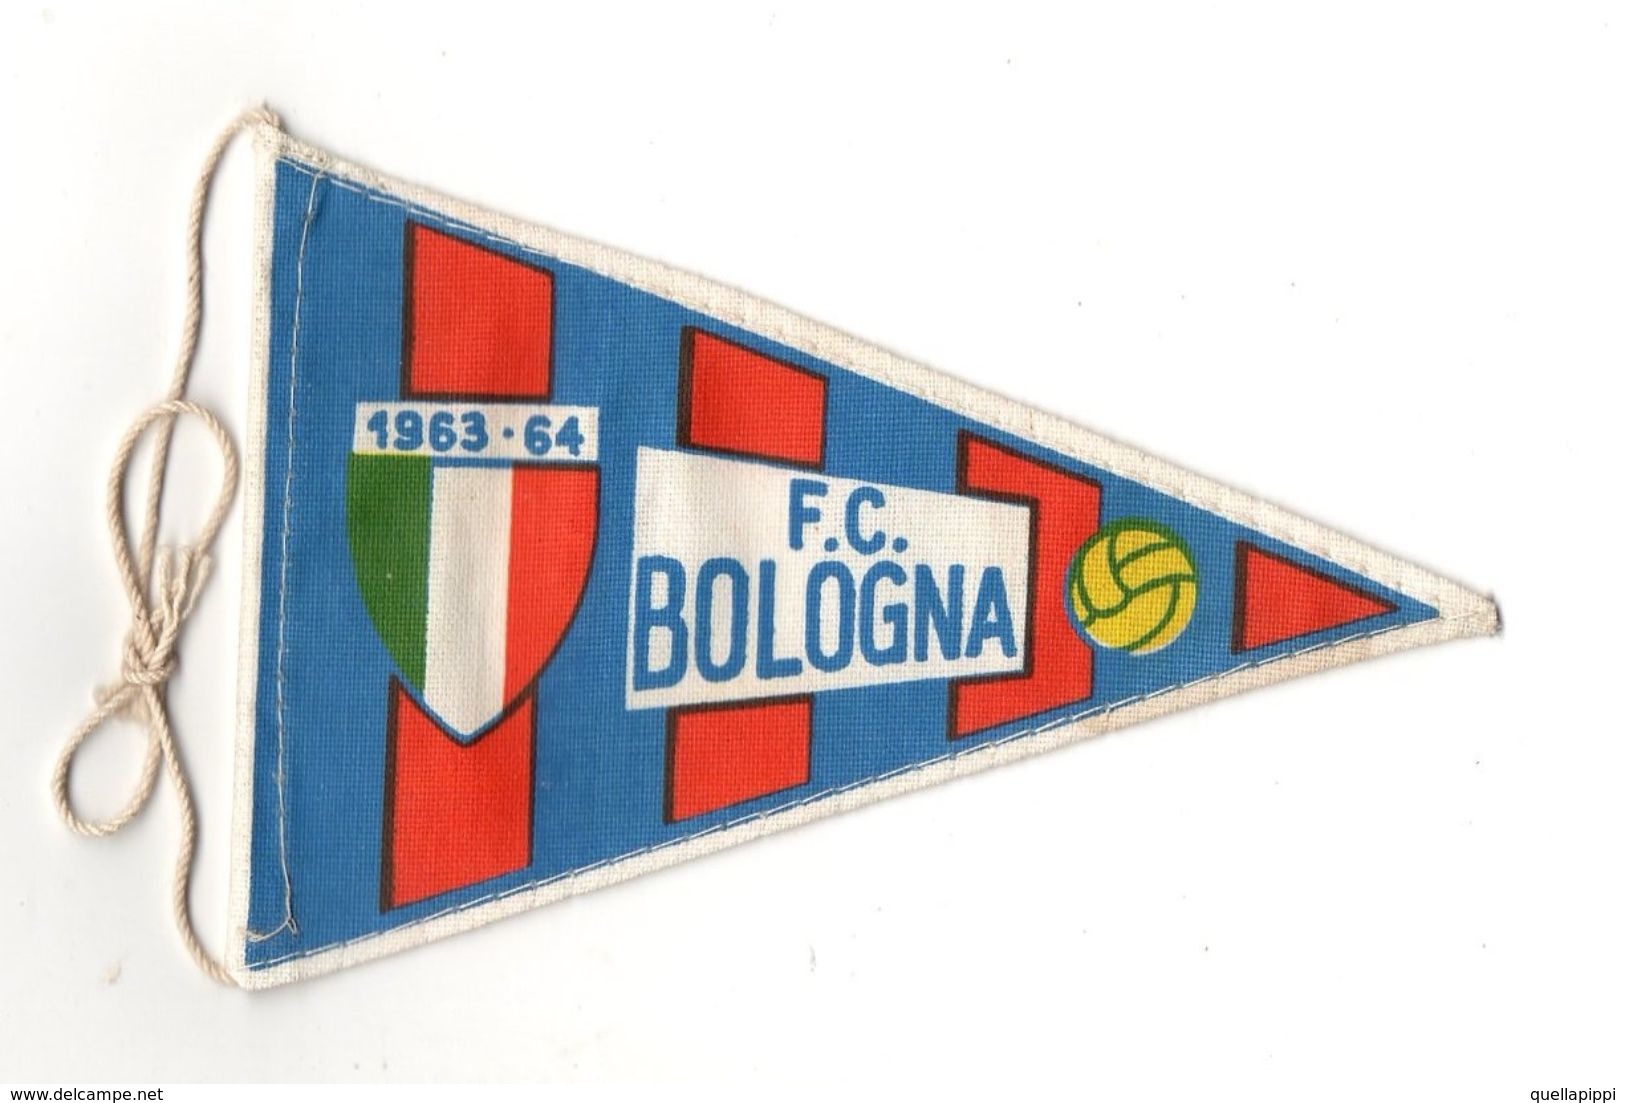 07130 "BOLOGNA F.C. FOOTBALL CLUB - BANDIERINA BIFRONTE IN STOFFA CON LEGACCI" ANNI 1963/1964 ORIG. - Habillement, Souvenirs & Autres